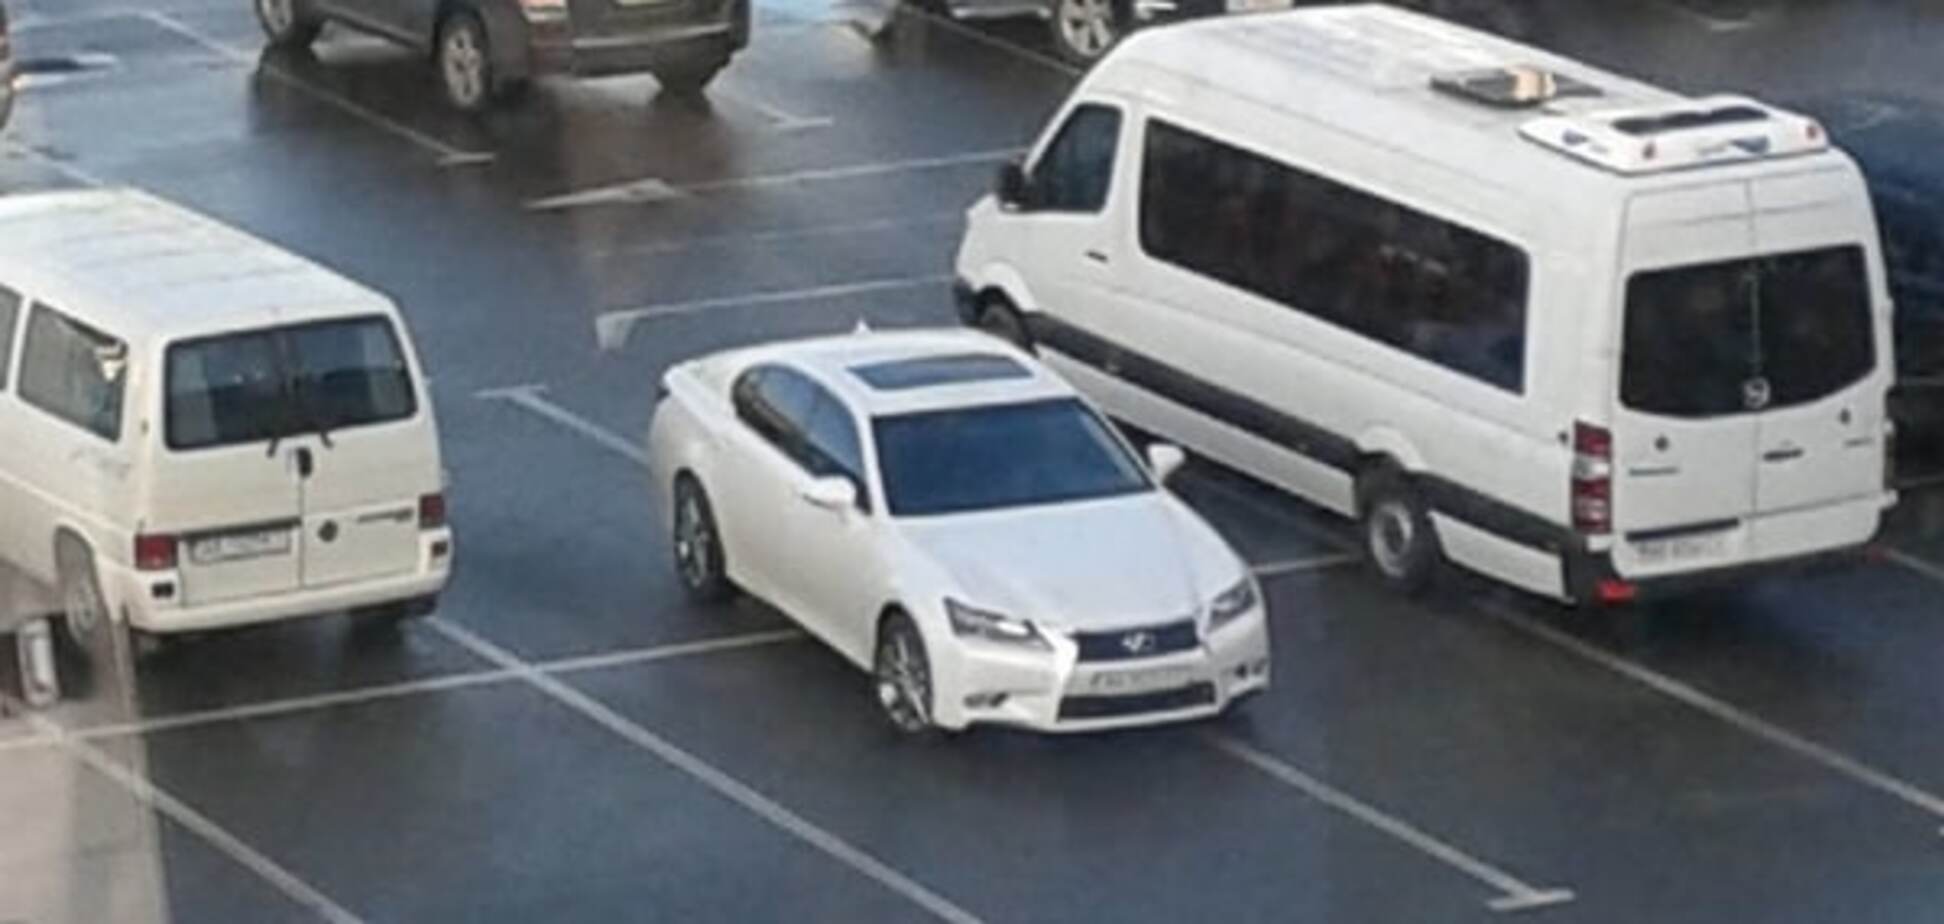 Герой парковки: наглый Lexus занял сразу 4 места на стоянке